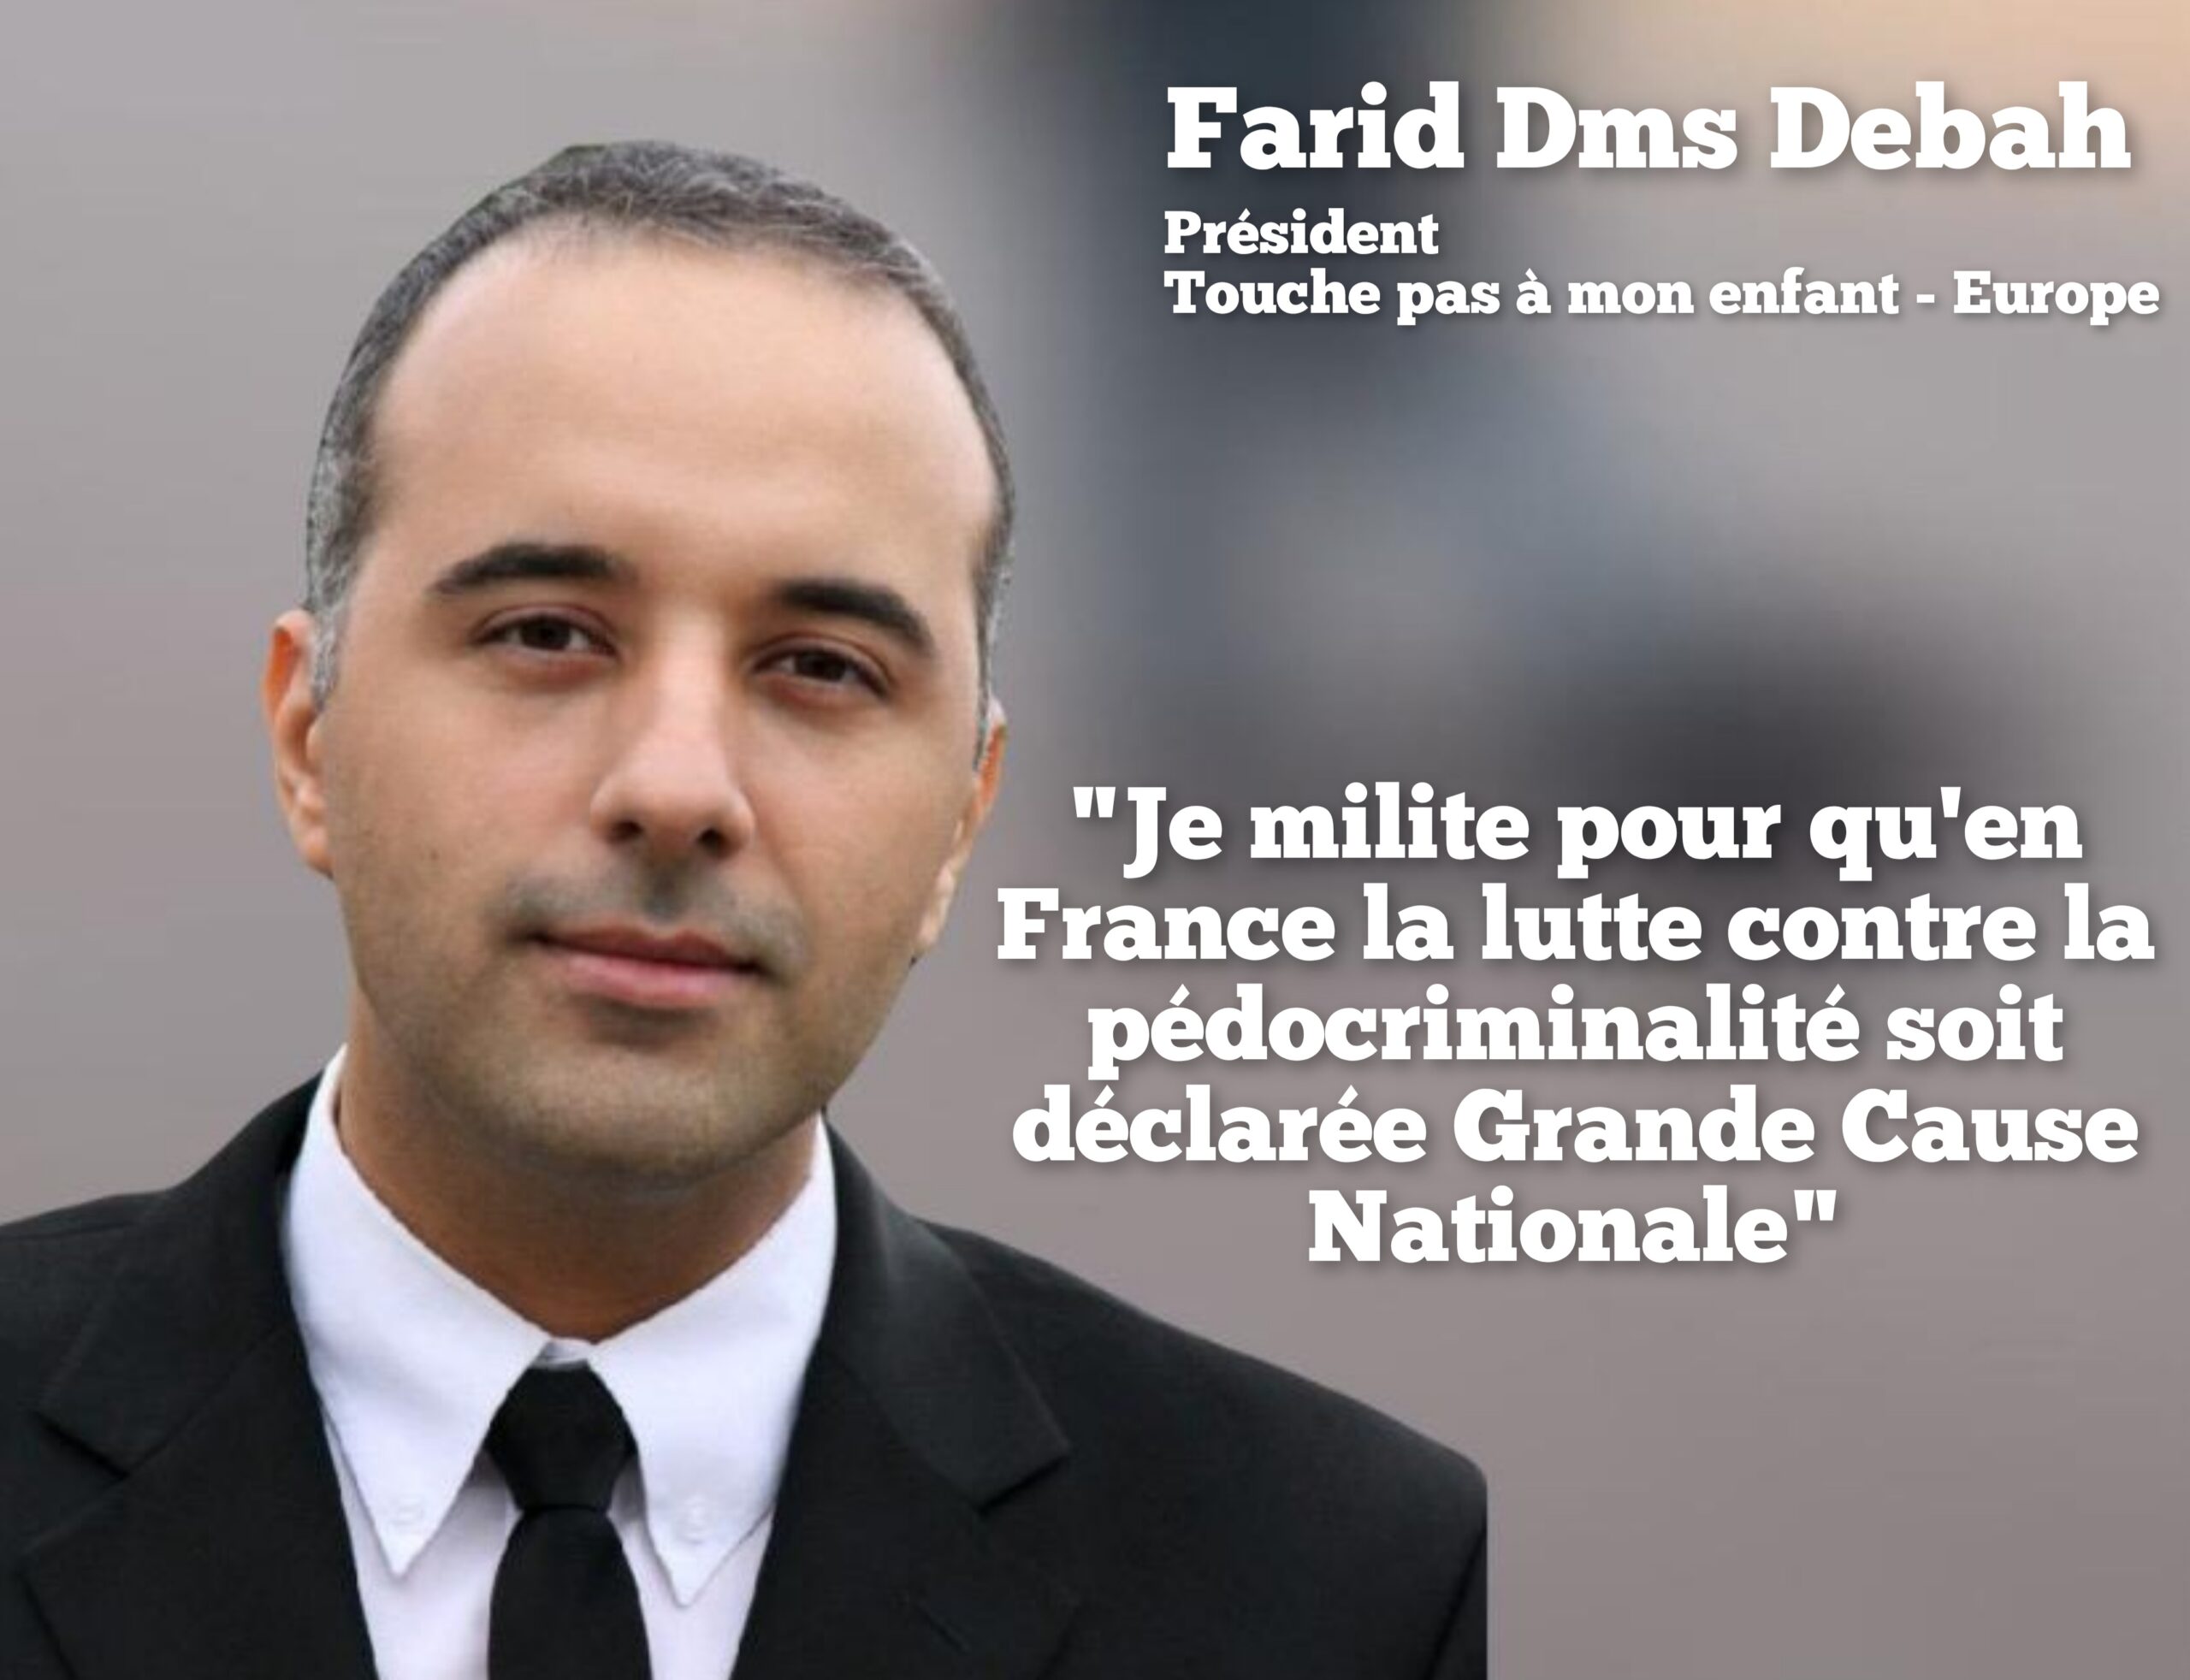 "Je milite pour qu'en France la lutte contre la pédocriminalité soit déclarée Grande Cause Nationale"
Farid Dms Debah